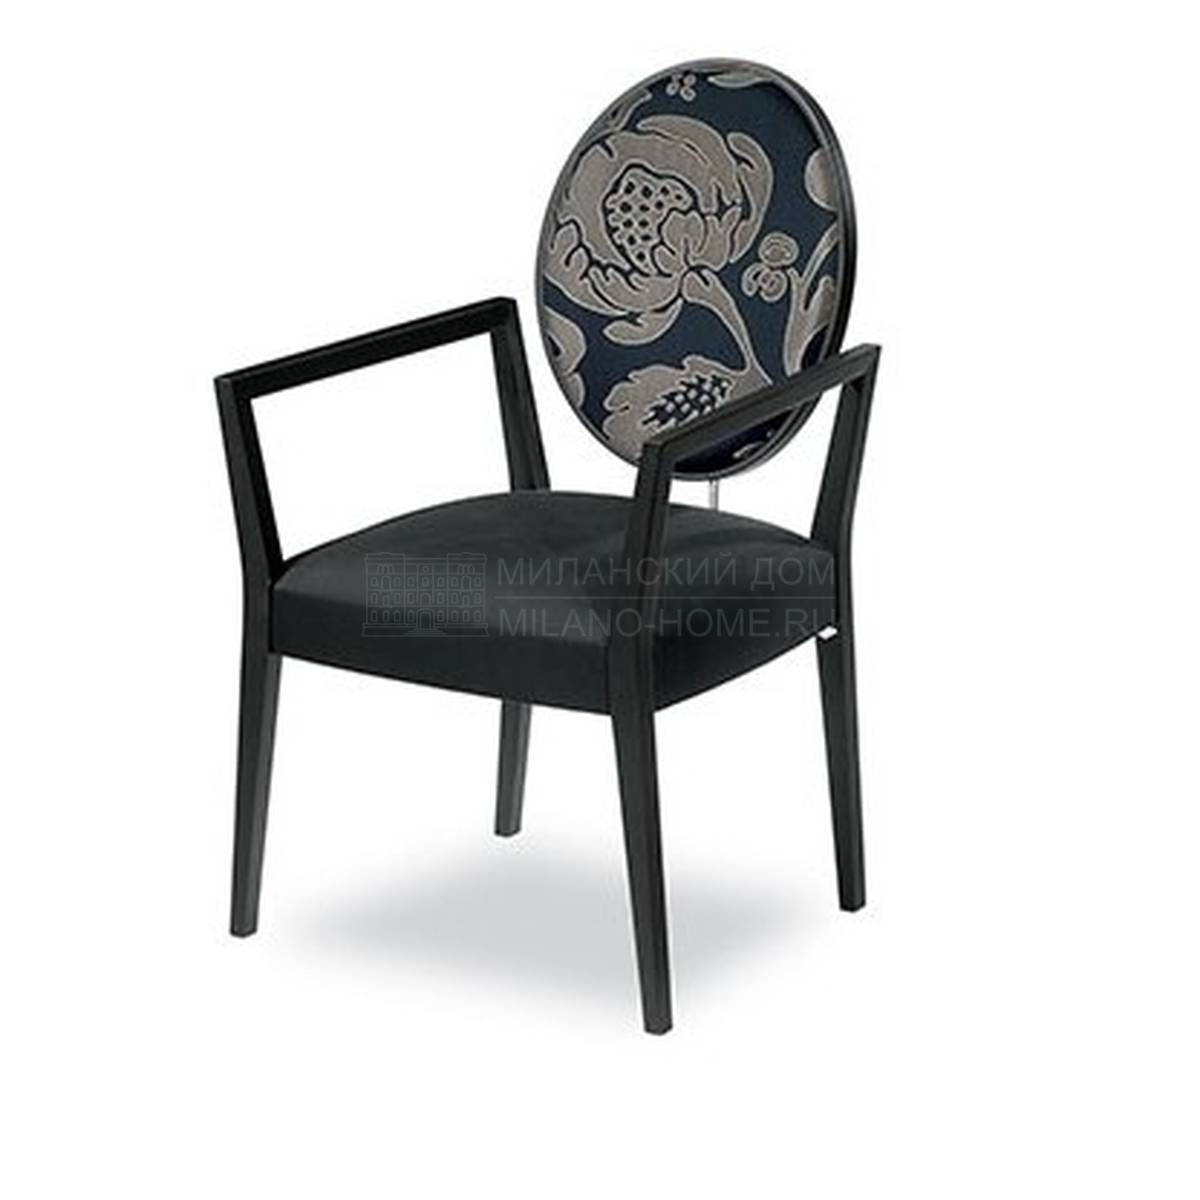 Полукресло Re sole chair из Италии фабрики TONON